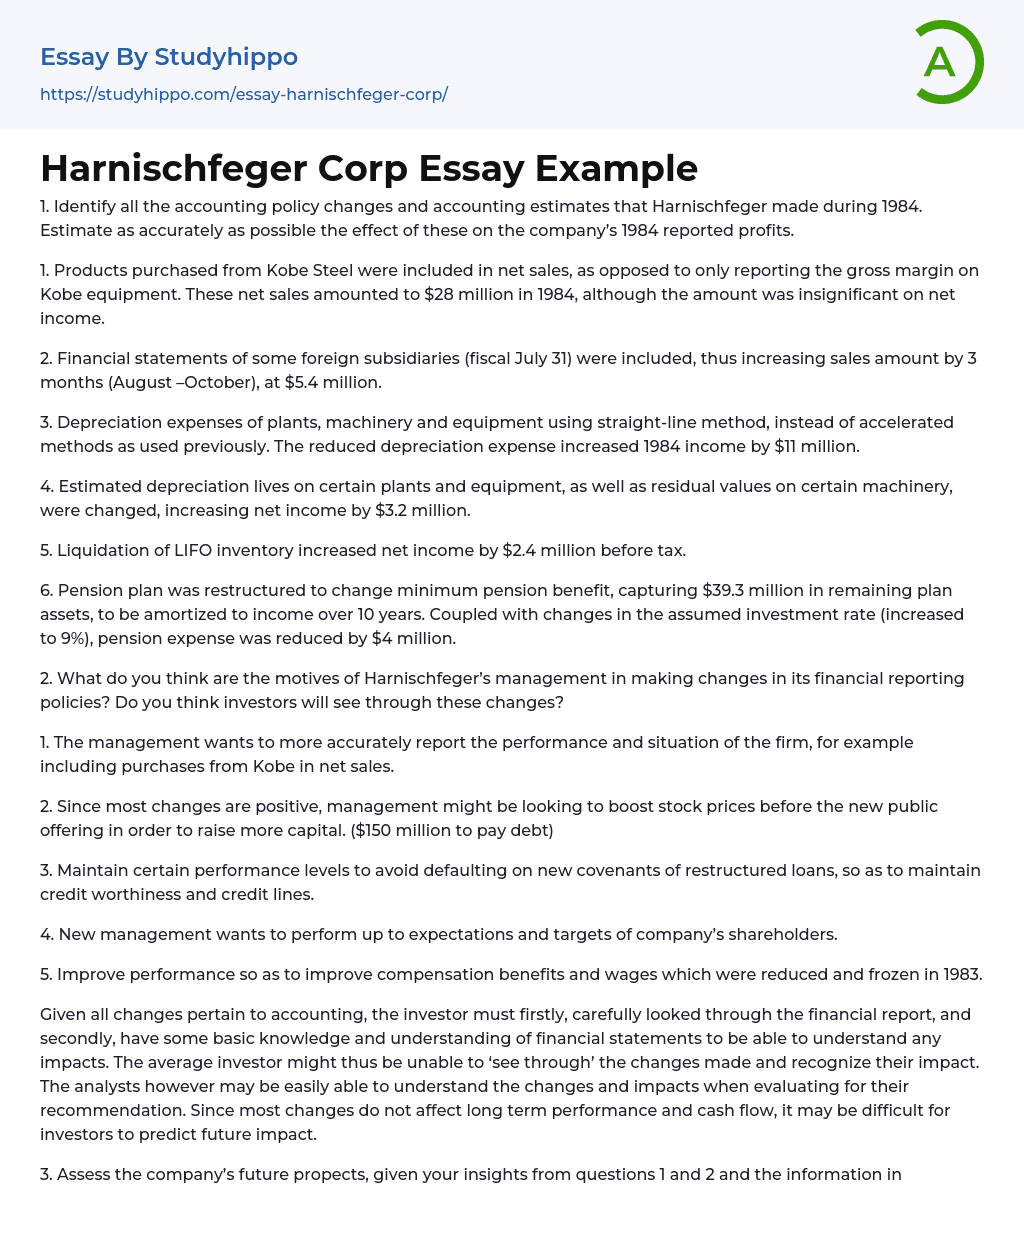 Harnischfeger Corp Essay Example